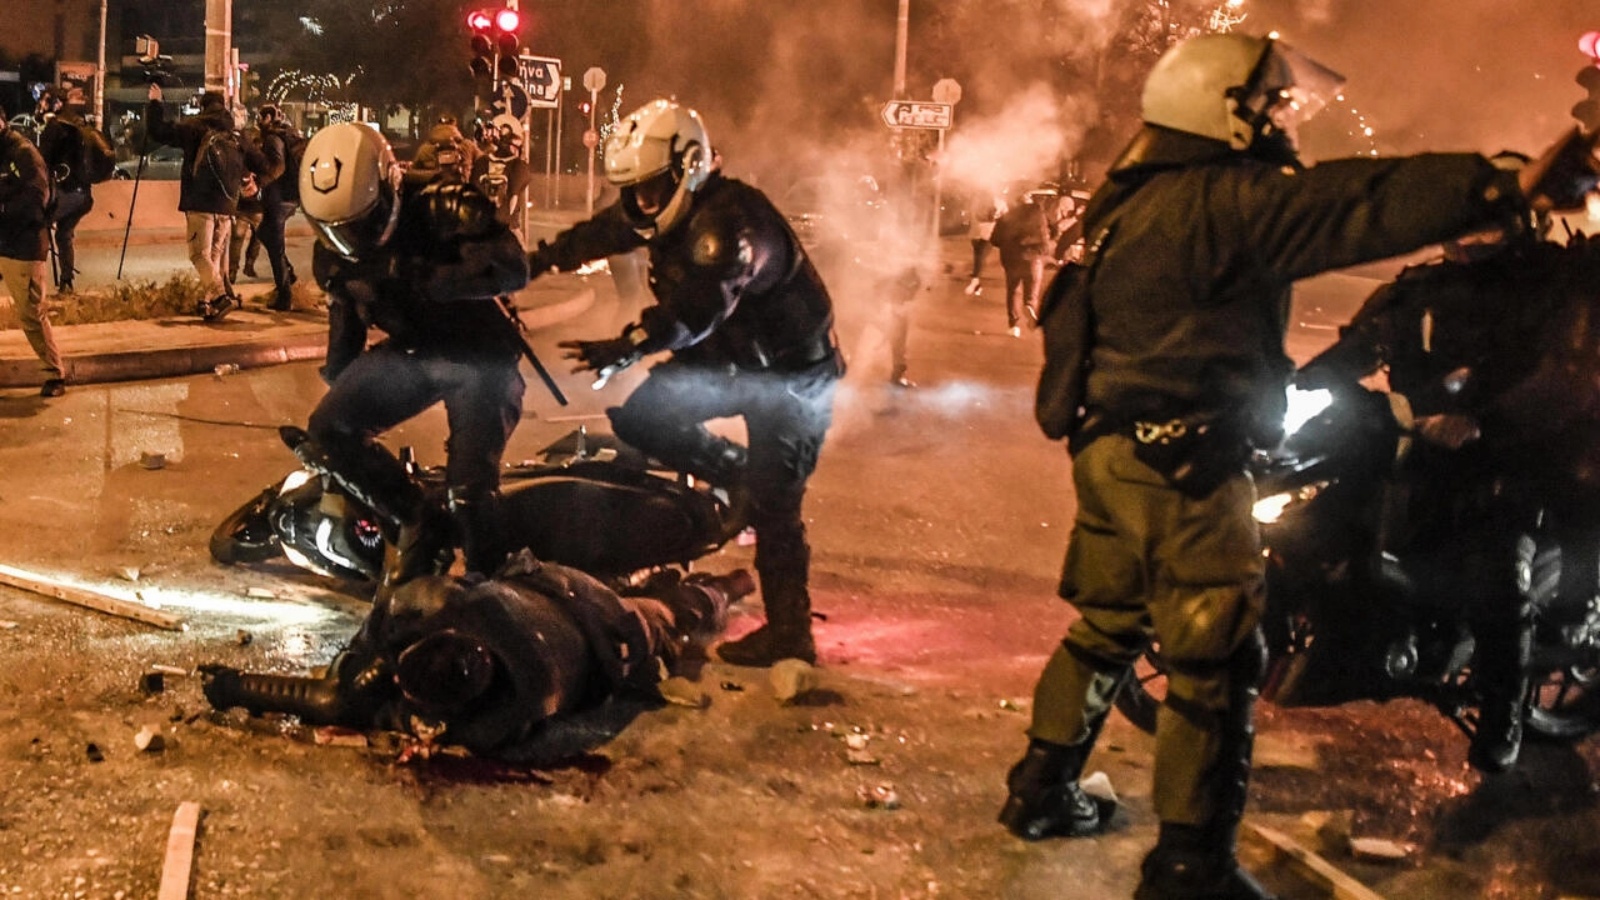 أصيب شرطي على دراجة نارية بجروح خطيرة في رأسه على هامش مظاهرة ضد انتهاكات الشرطة، في إحدى ضواحي أثينا، اليونان، في 9 مارس 2022